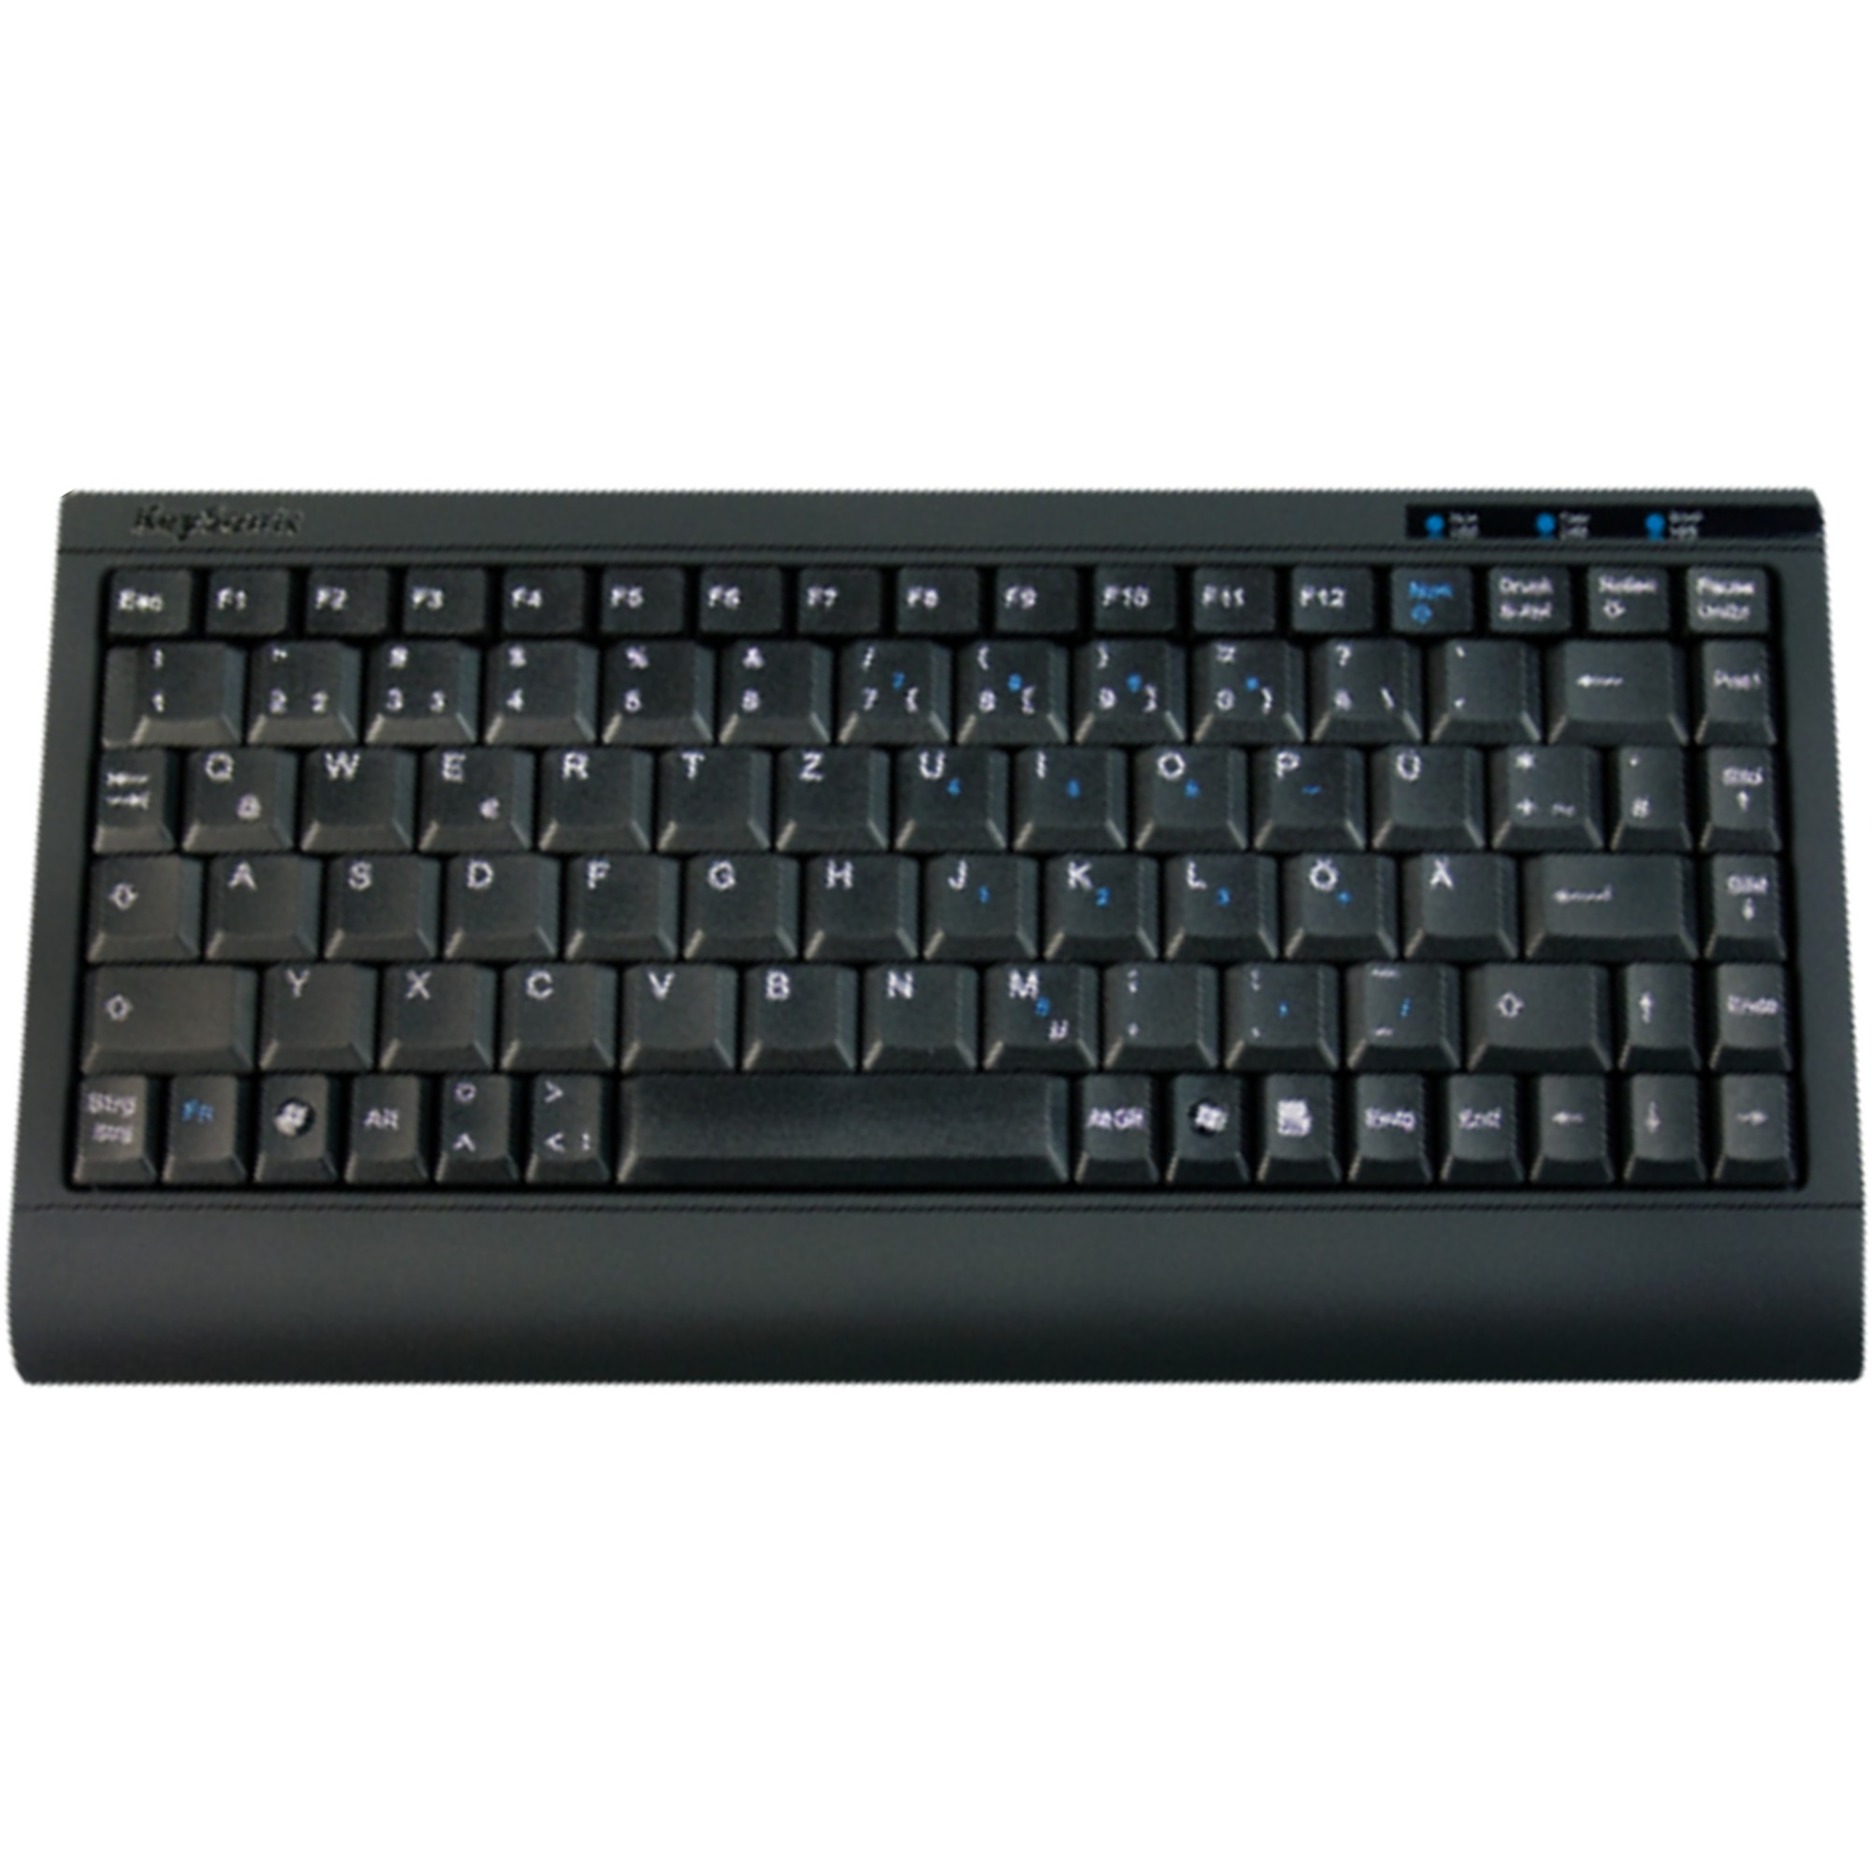 Image of Alternate - ACK-595 C+, Tastatur online einkaufen bei Alternate